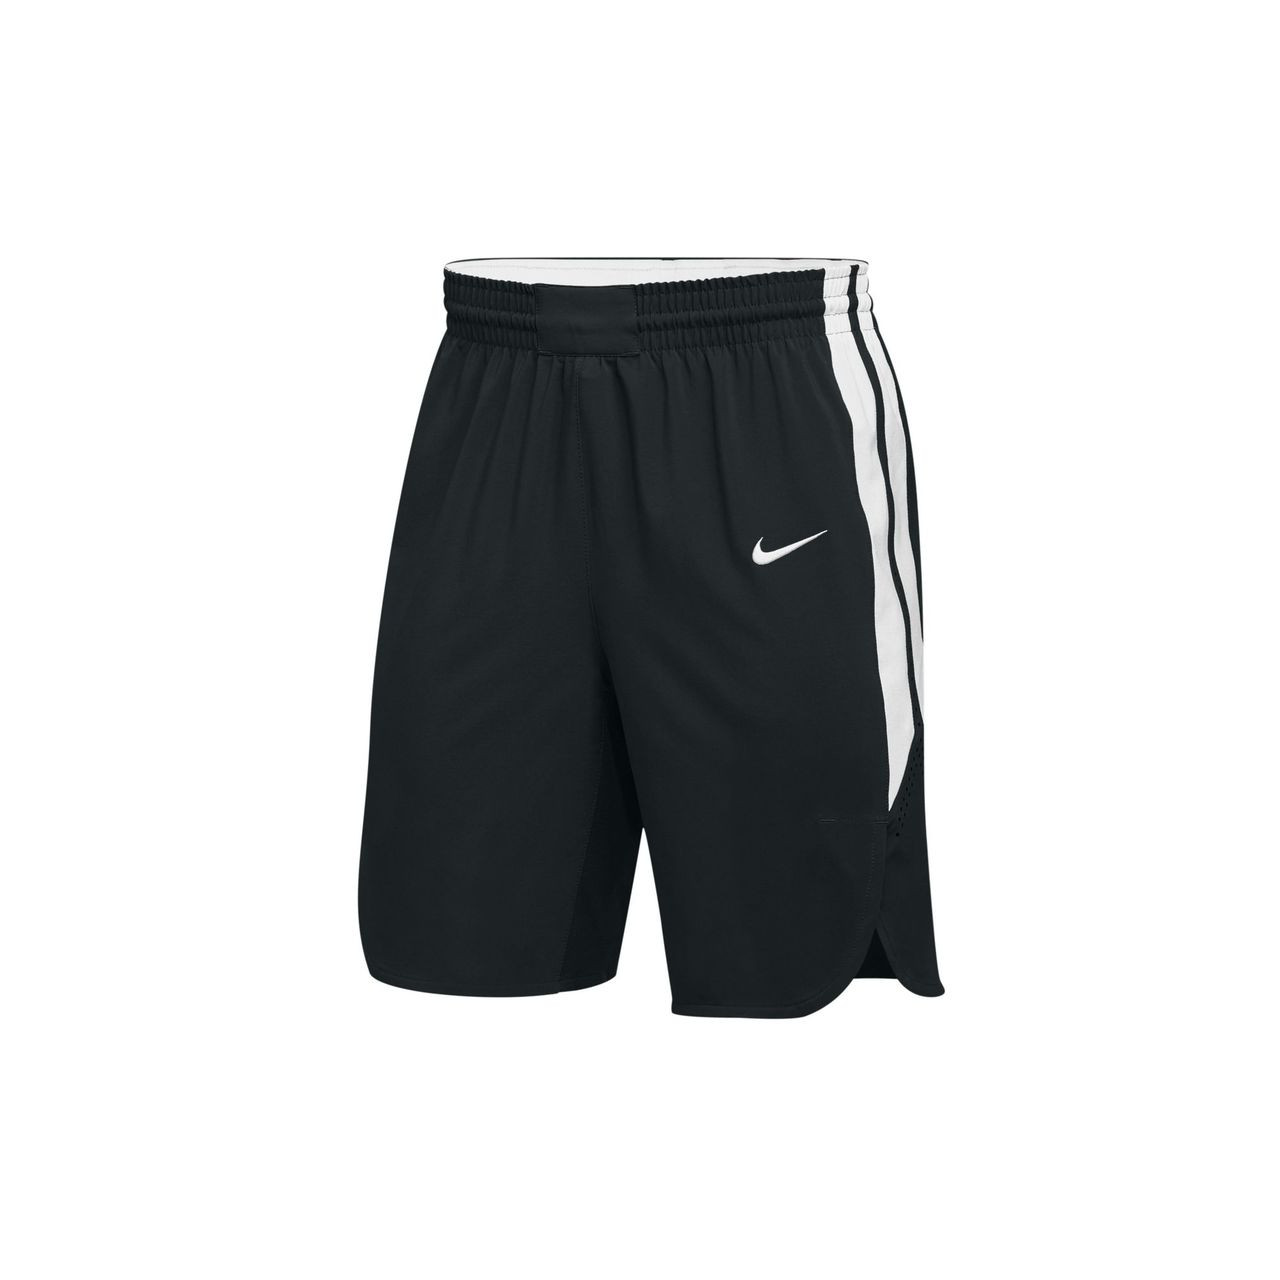 Nike Men's Hyperelite Short - Black/White